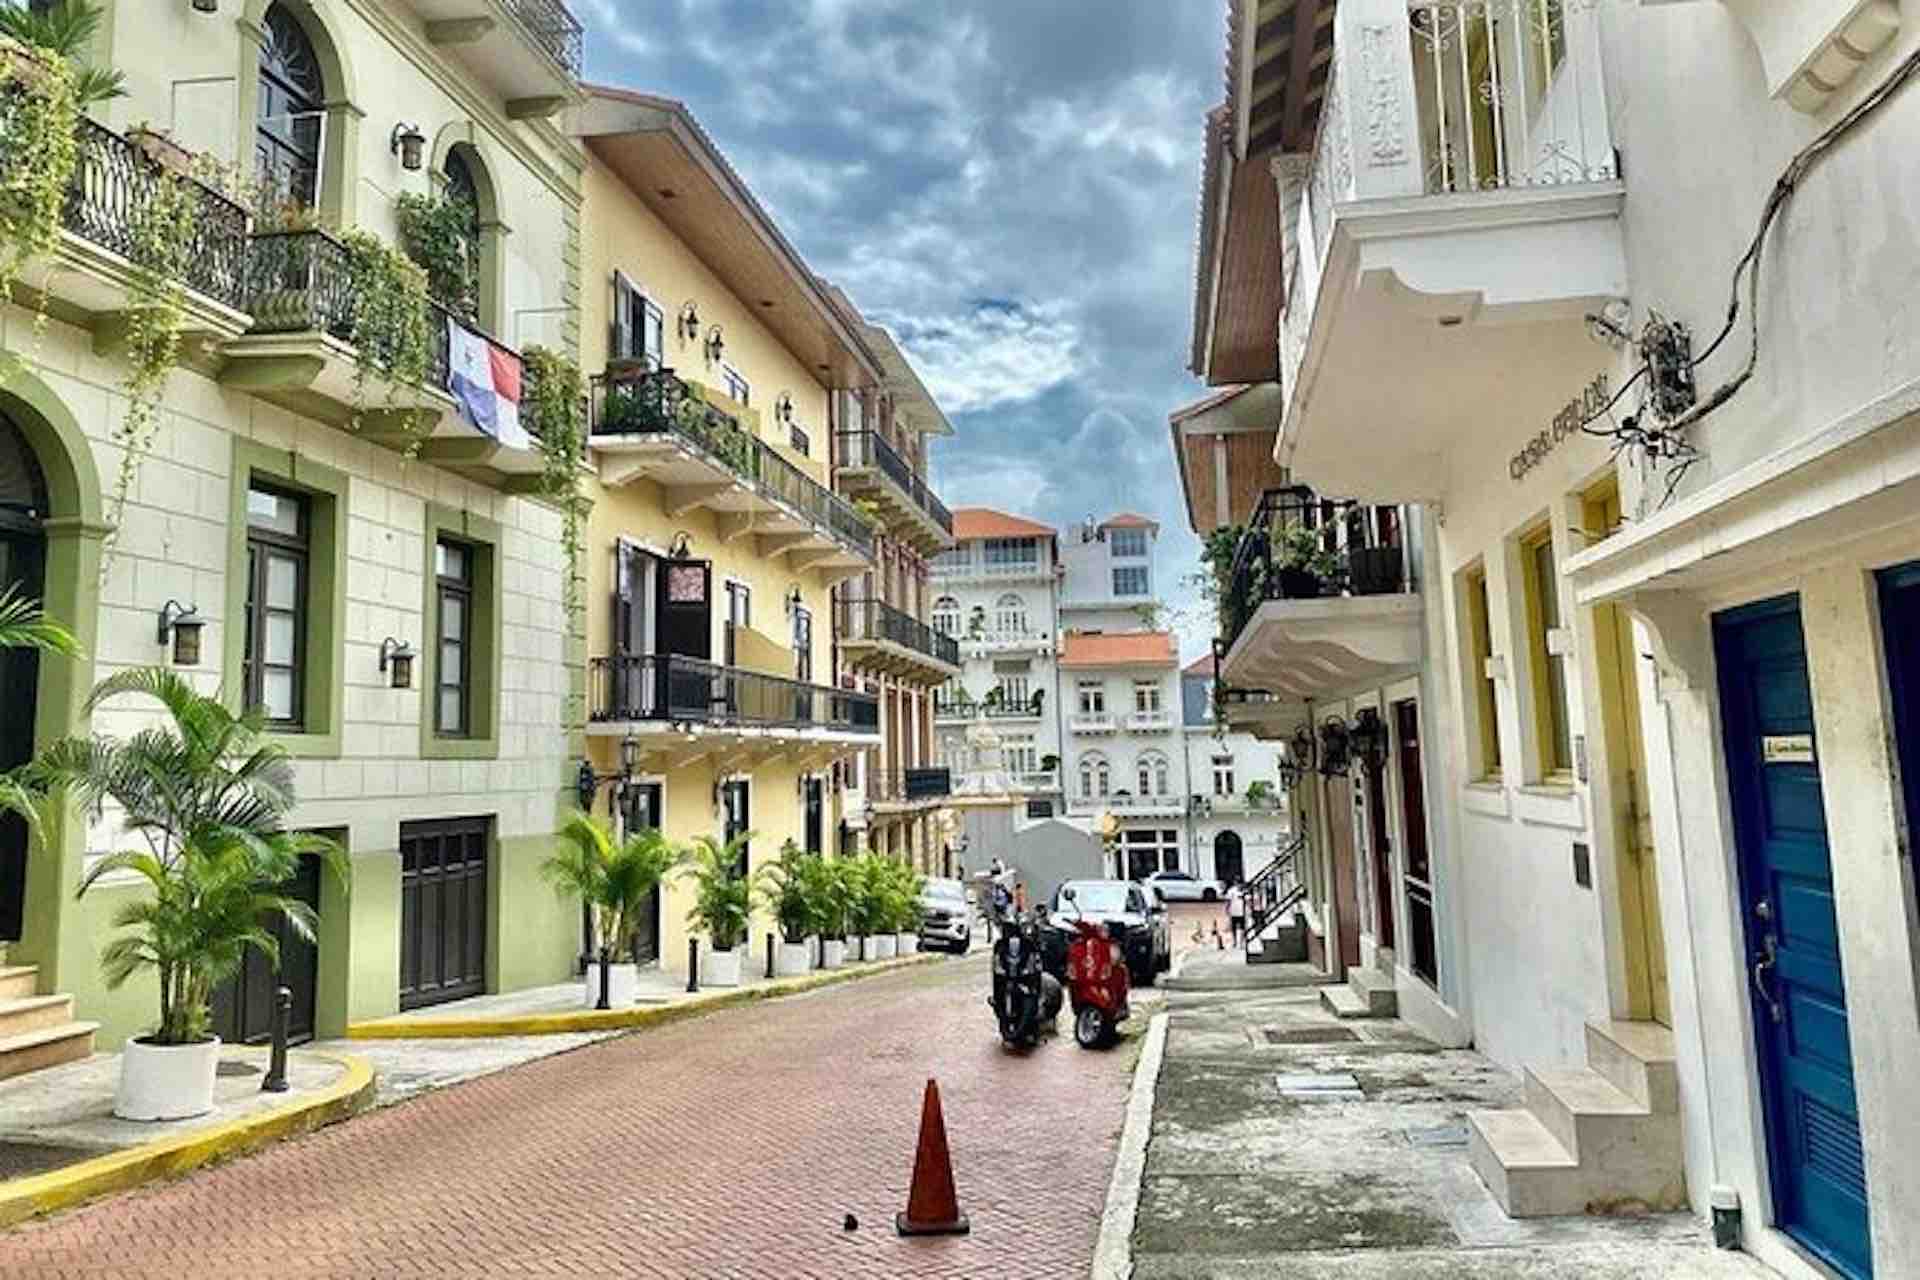 Panama Casco Viejo Walking Tour street